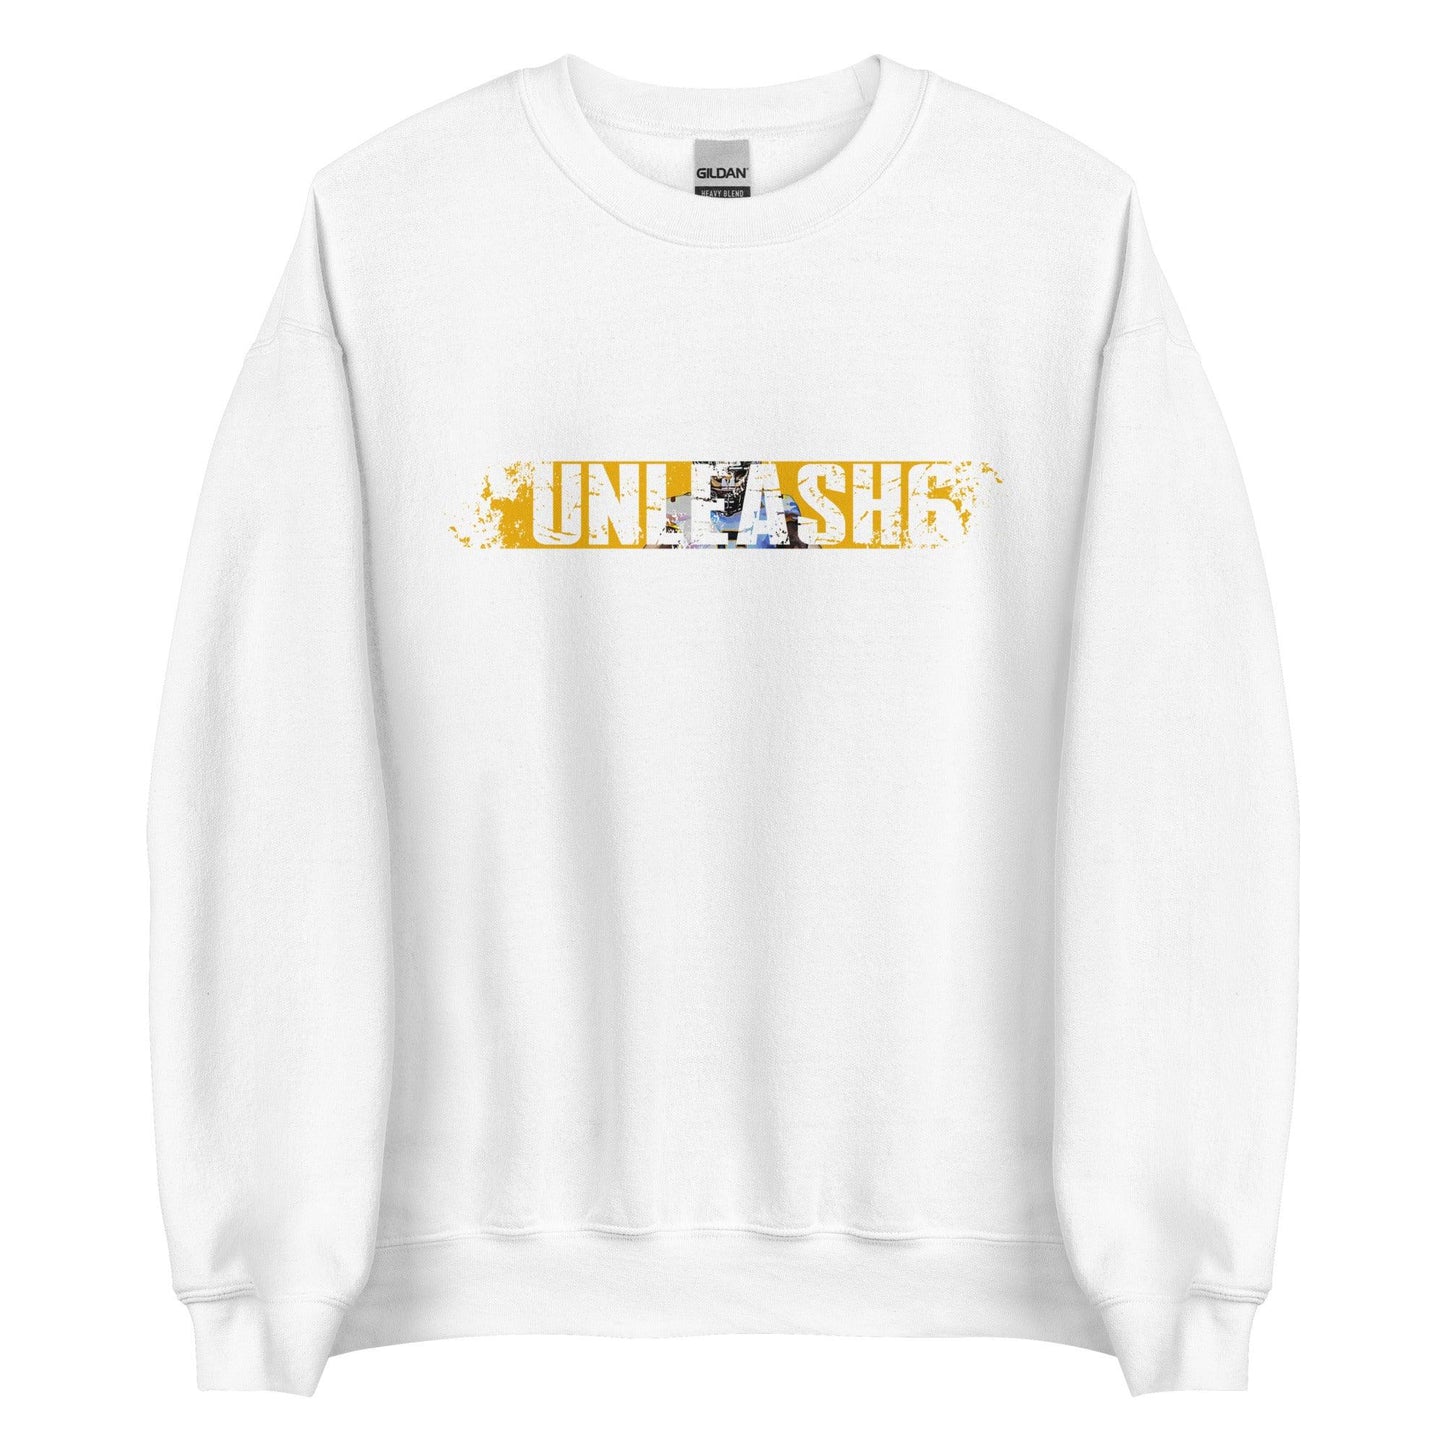 Dajon Richard "Unleash6" Sweatshirt - Fan Arch